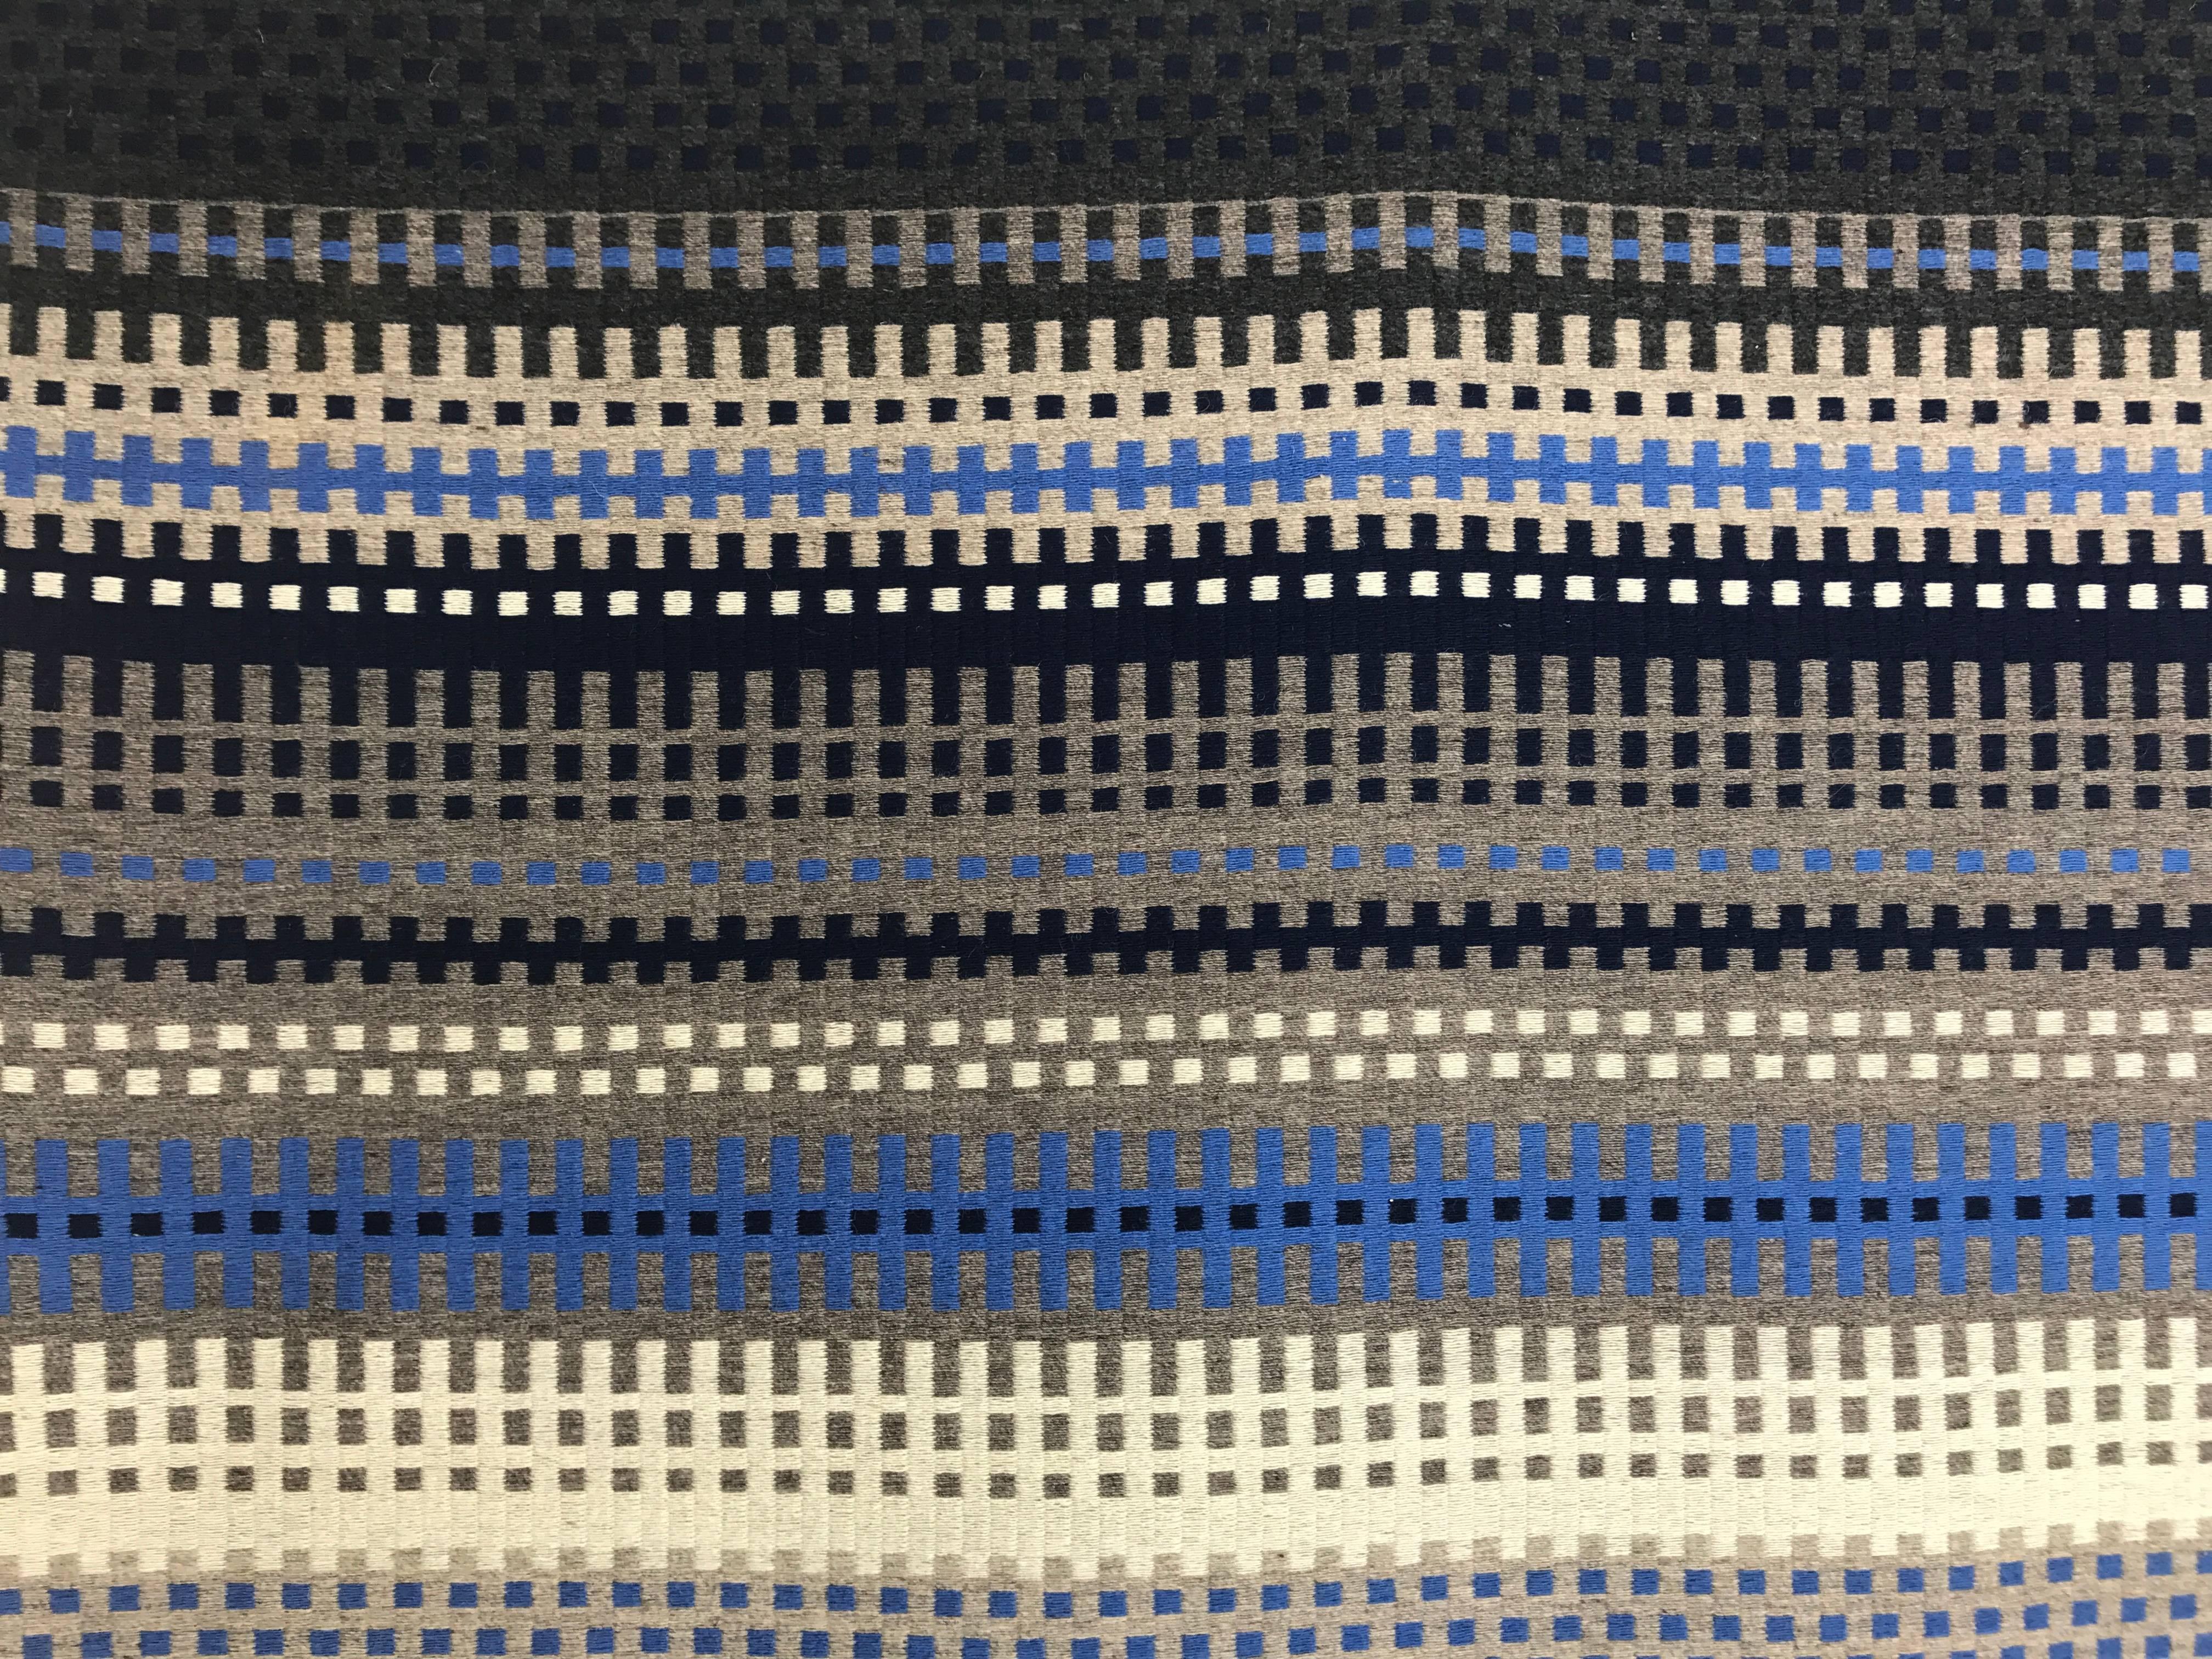 Textile moderniste Tapis à tissage plat signé Valja ,Merveilleuses teintes de bleus, gris taupes. S'intègre parfaitement à tout environnement.